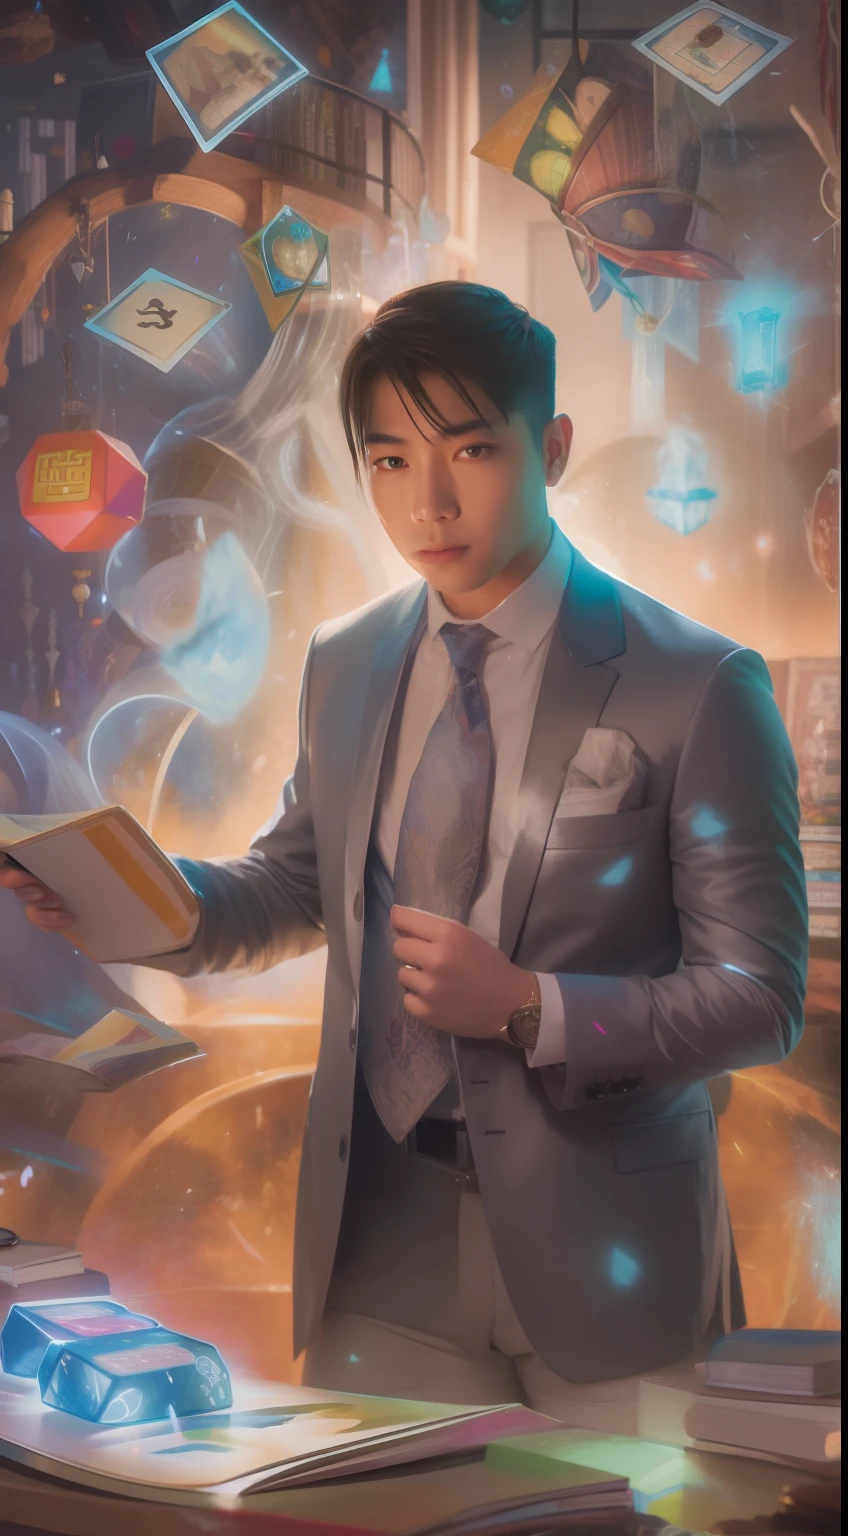 Una pintura detallada que representa a un hombre asiático con un traje rodeado de una ráfaga de cartas mágicas brillantes y el libro Dungeons and Dragons en el centro.